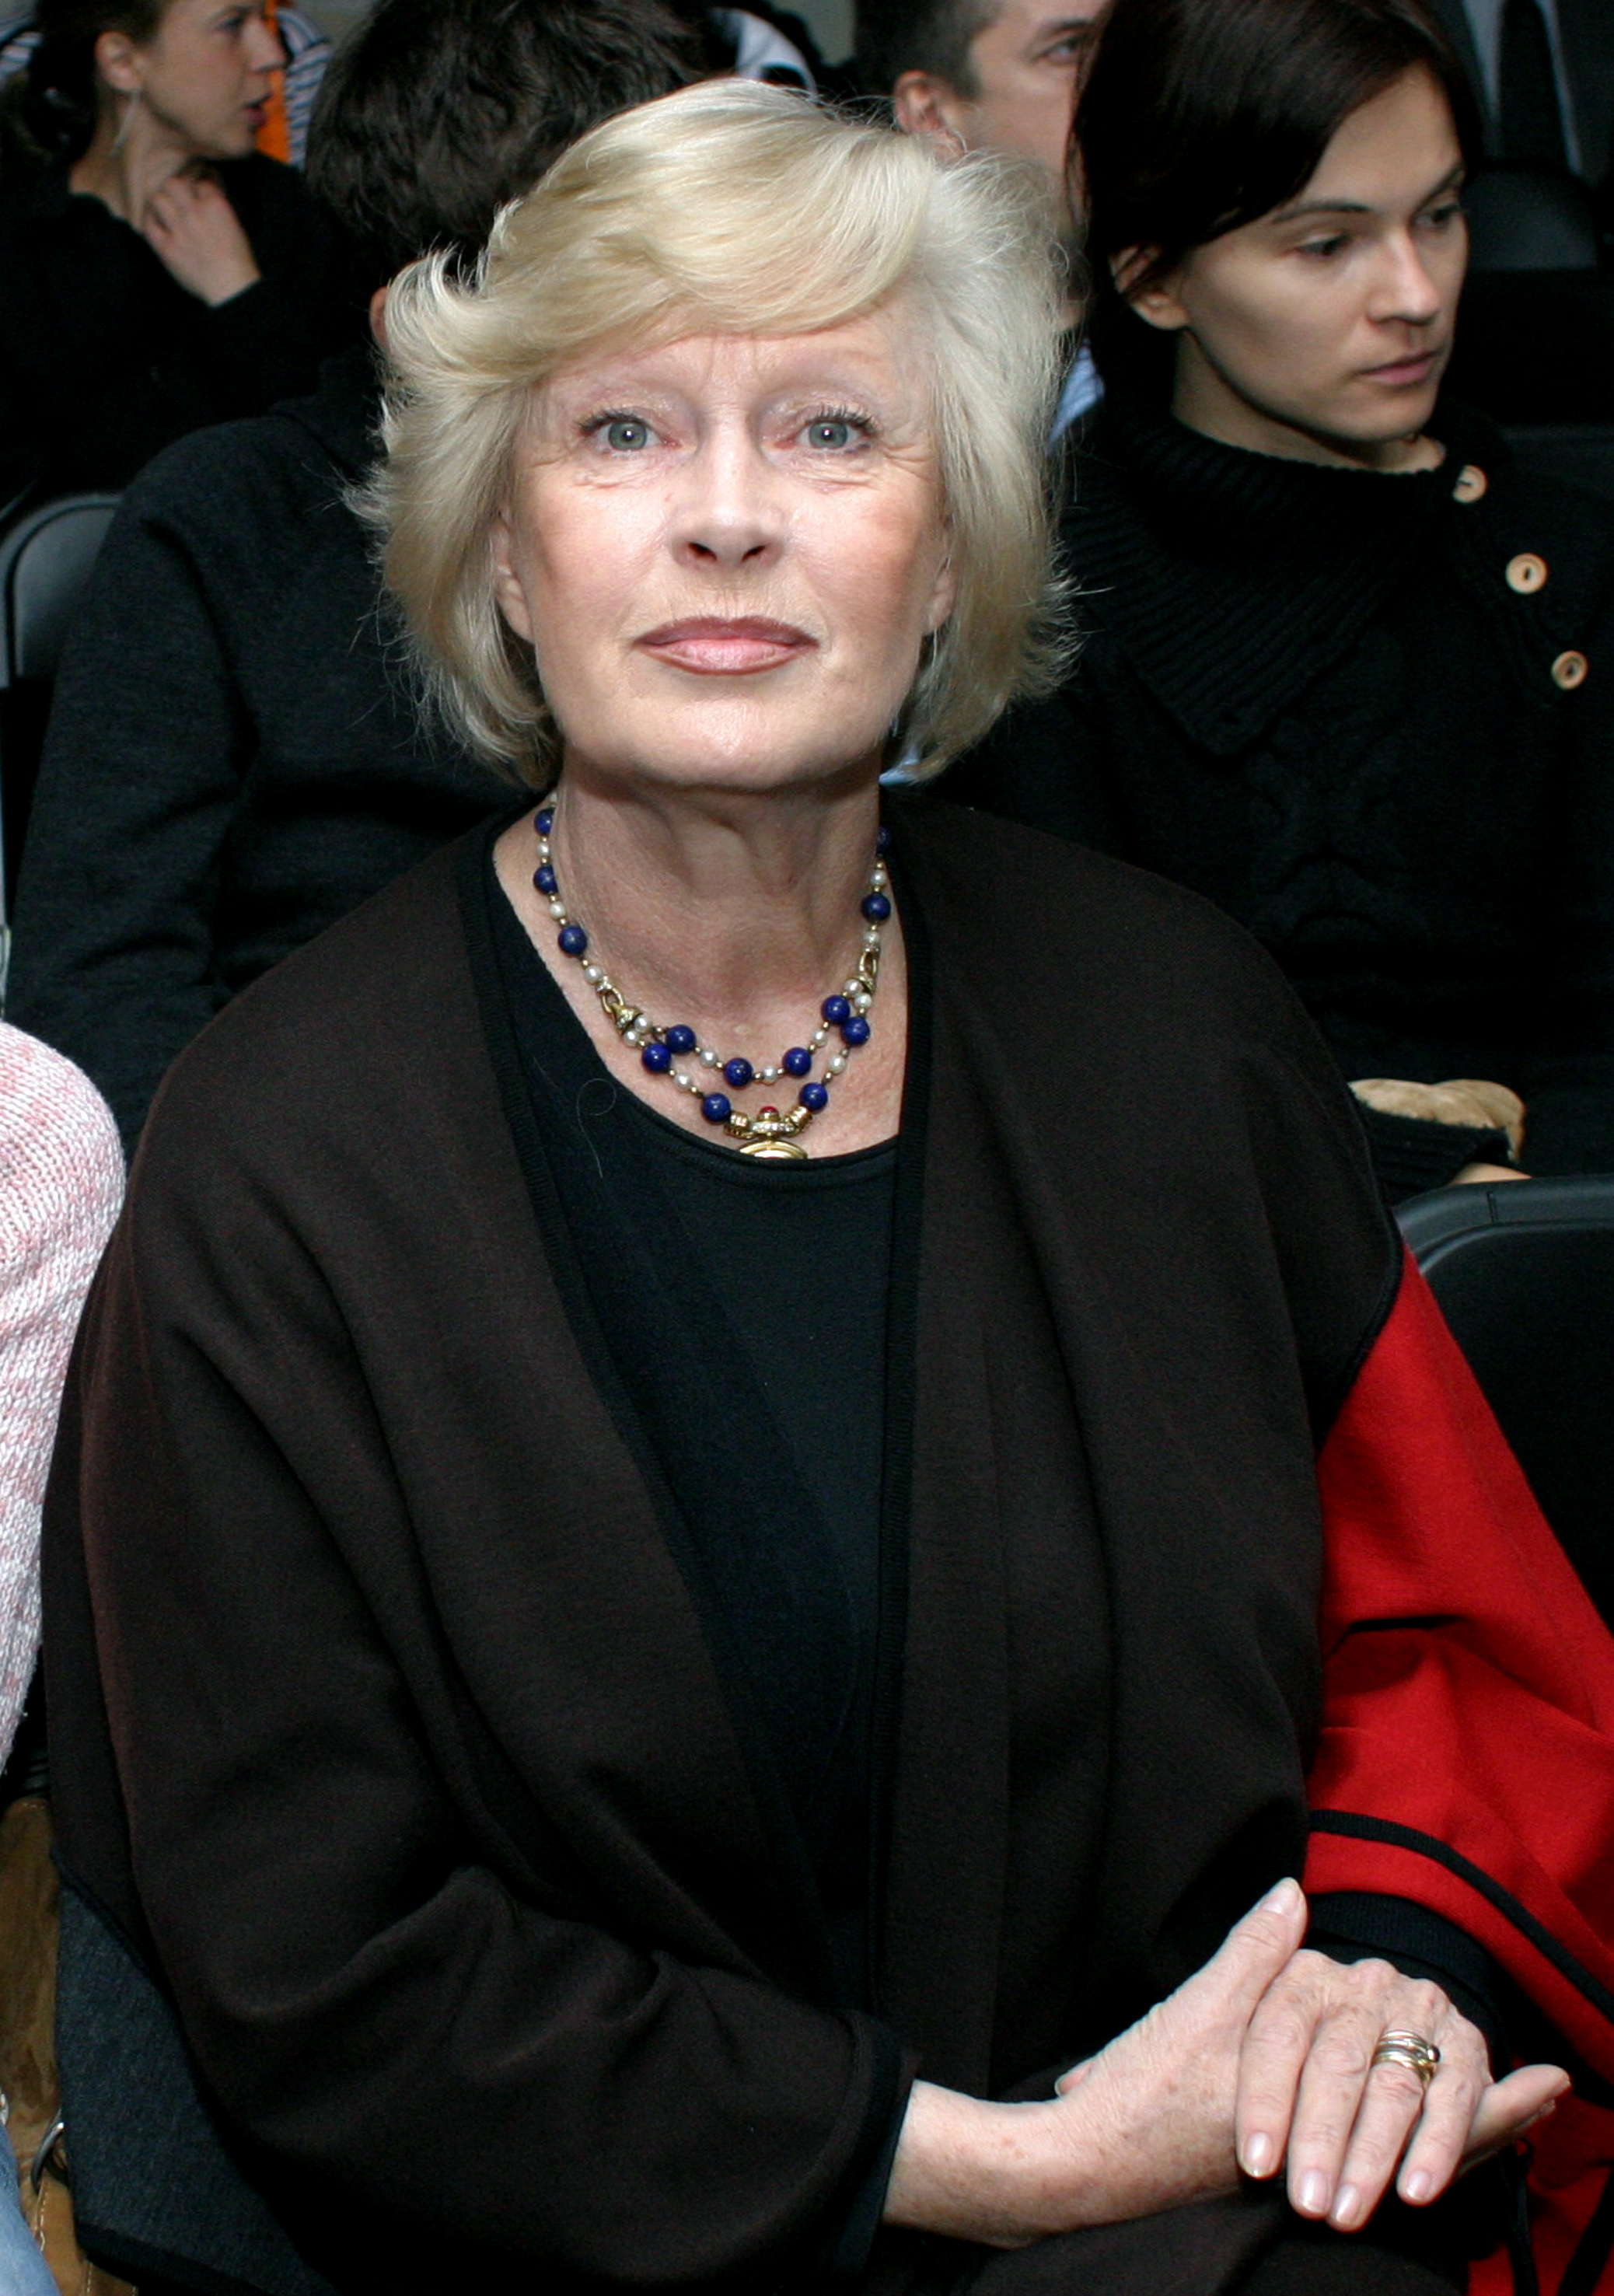 Beata Tyszkiewicz